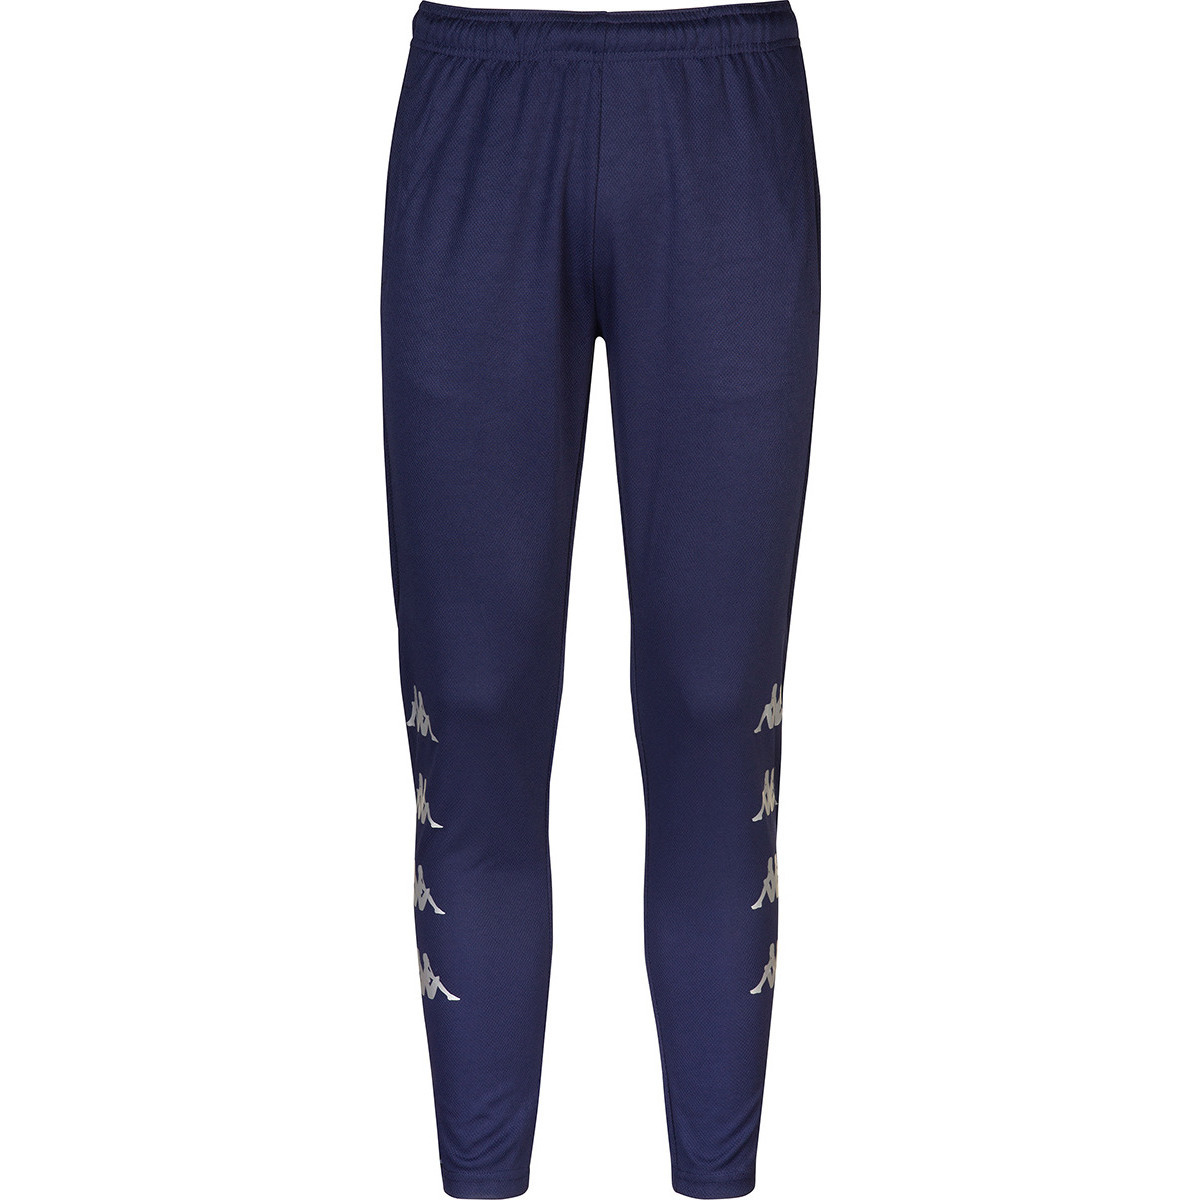 Vêtements Garçon Pantalons de survêtement Kappa Pantalon Dolcedo Bleu